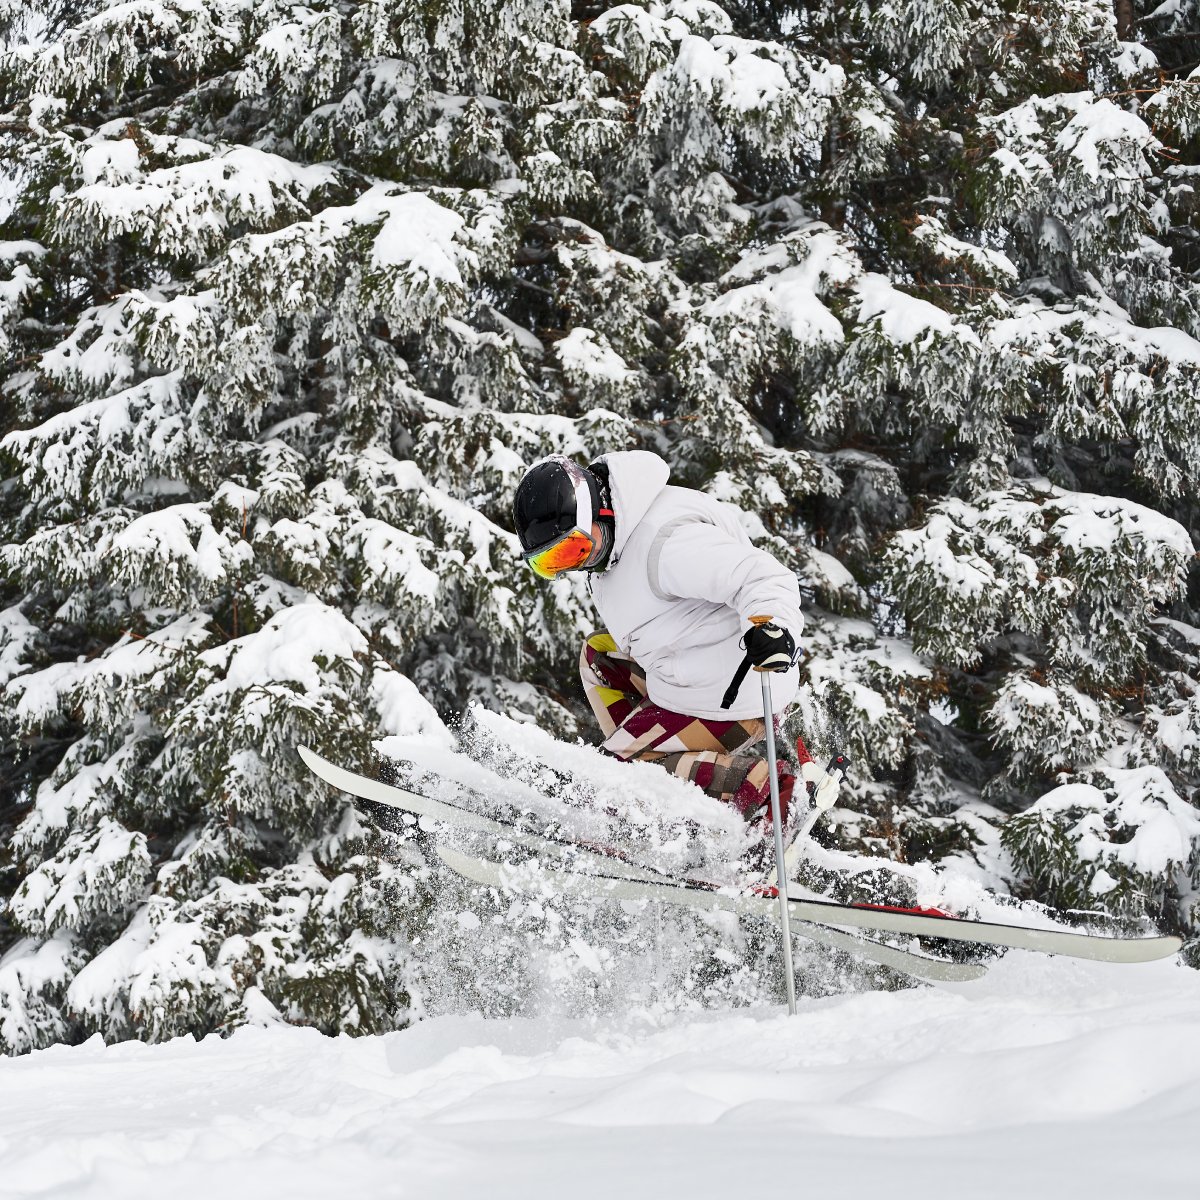 Is skiing beginner-friendly